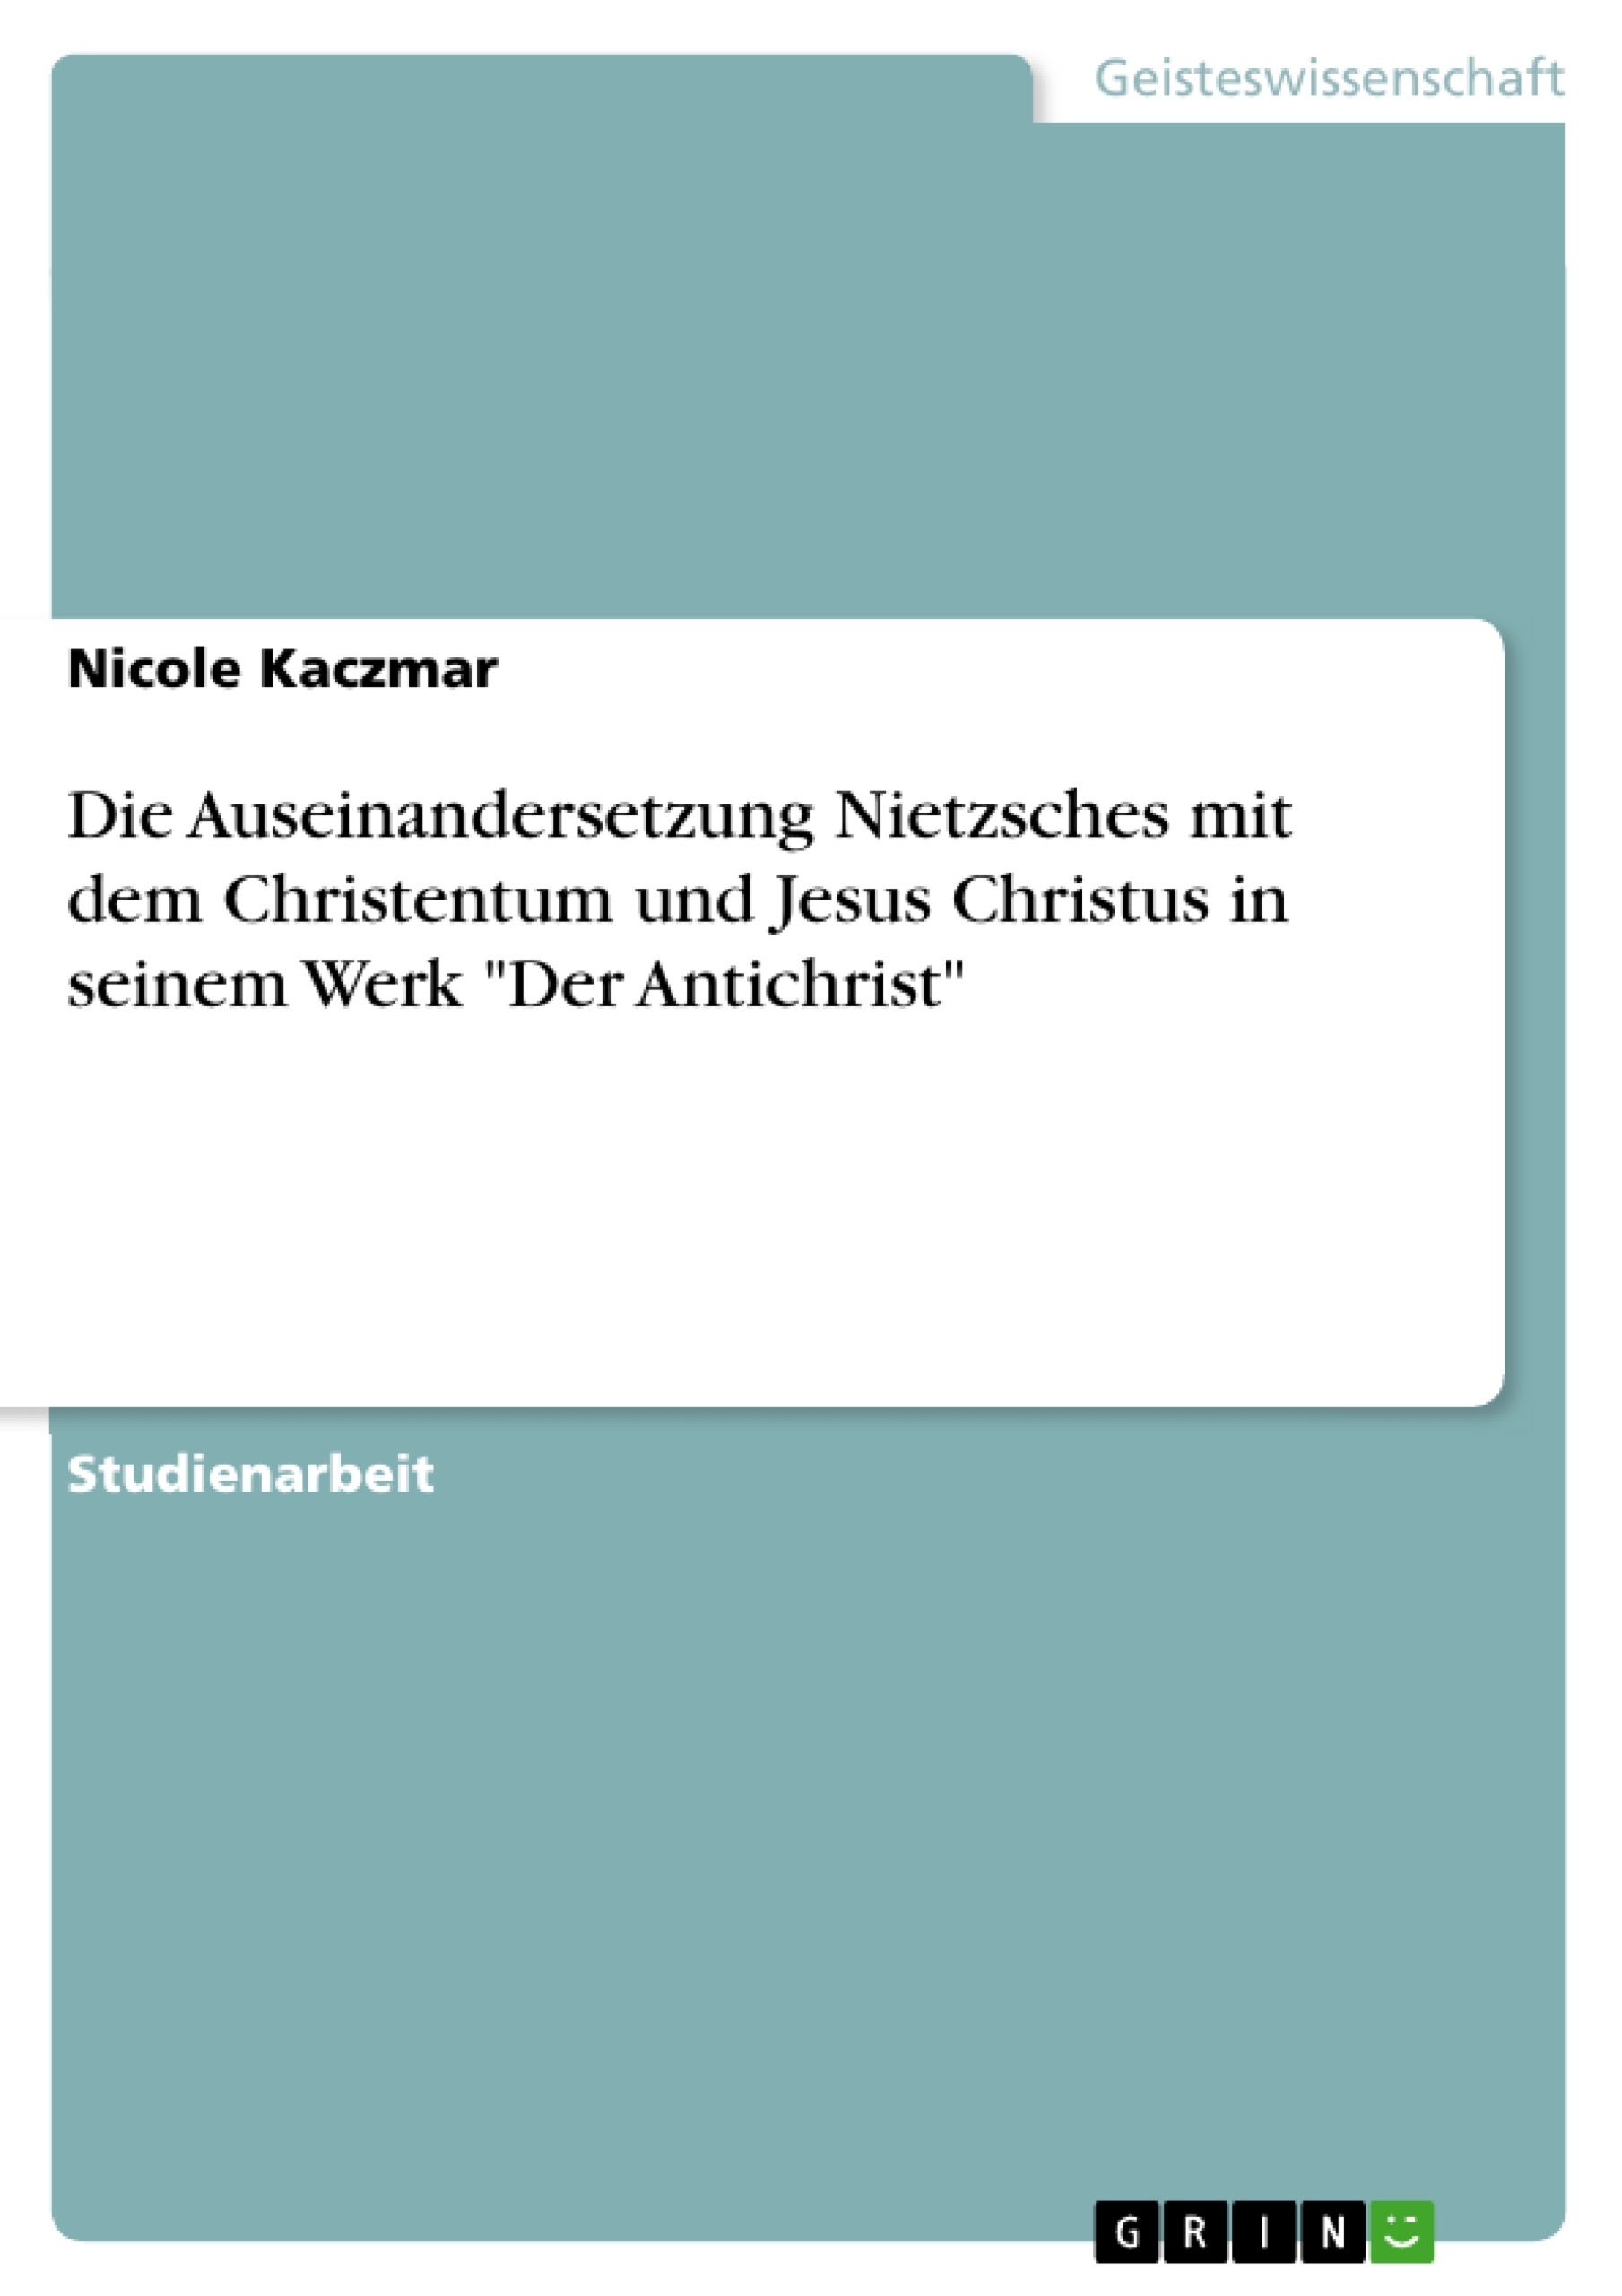 Title: Die Auseinandersetzung Nietzsches mit dem Christentum und Jesus Christus in seinem Werk "Der Antichrist"